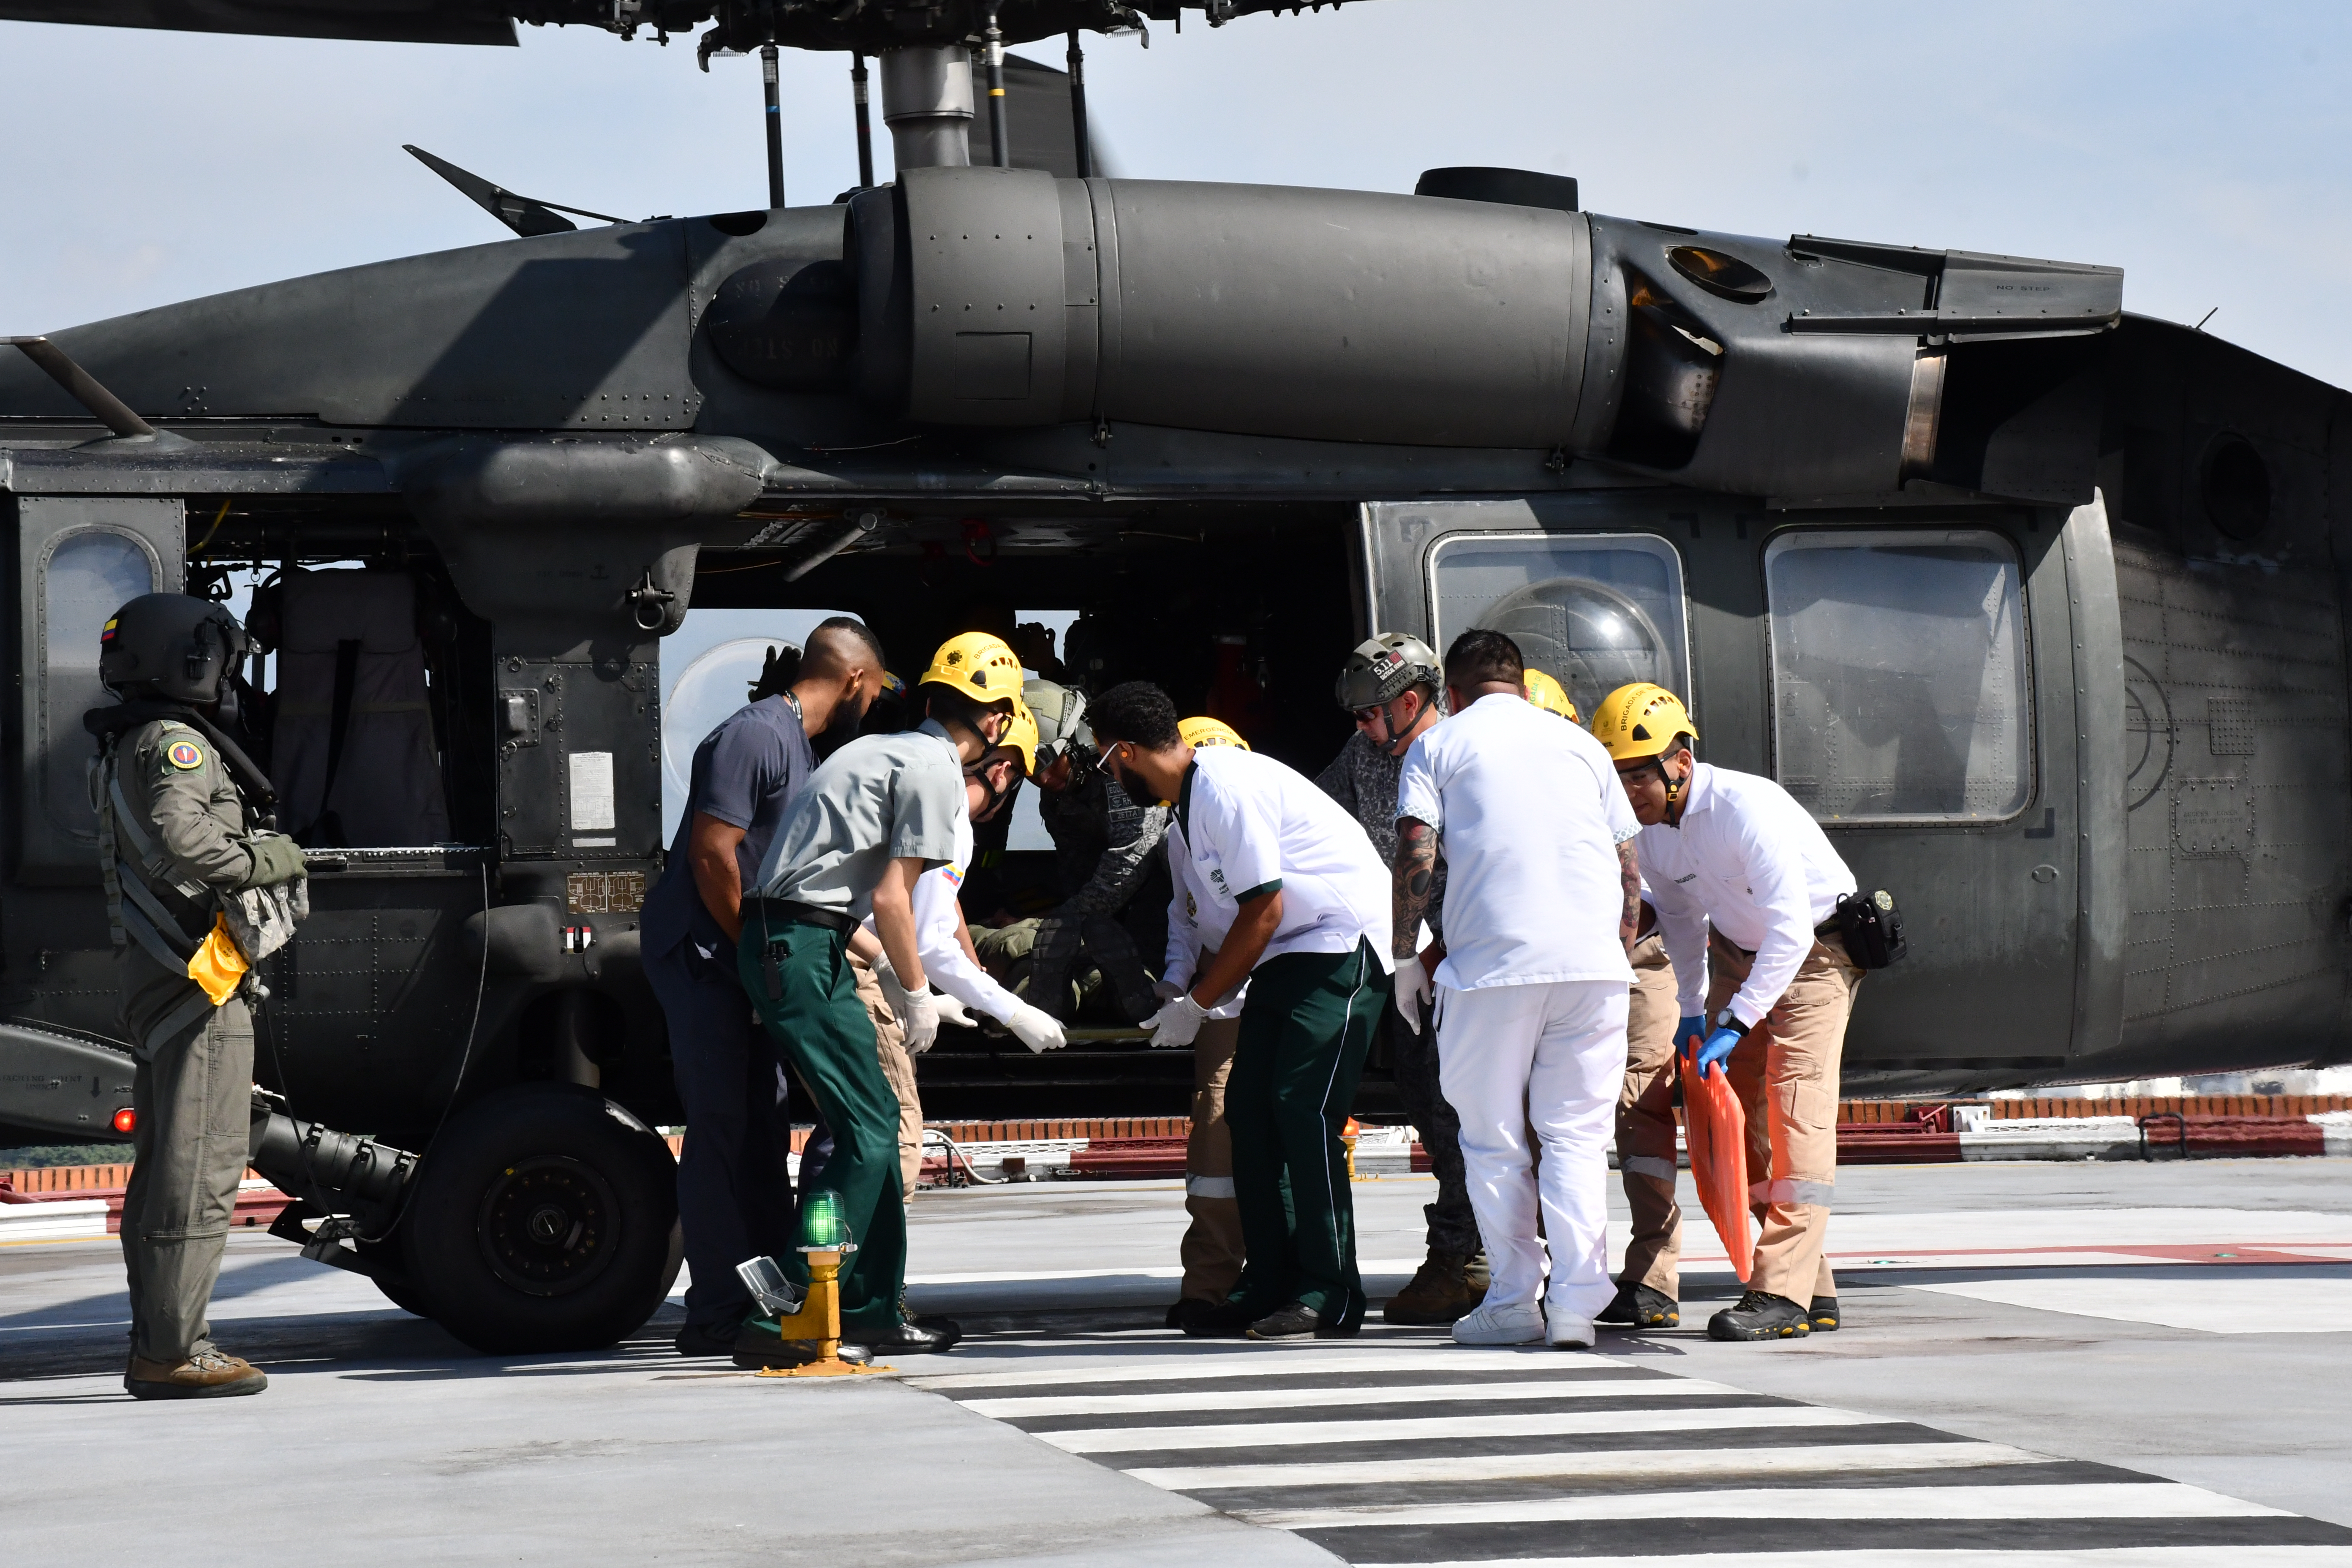 Alianzas estratégicas fortalecen misiones de evacuaciones aeromédicas